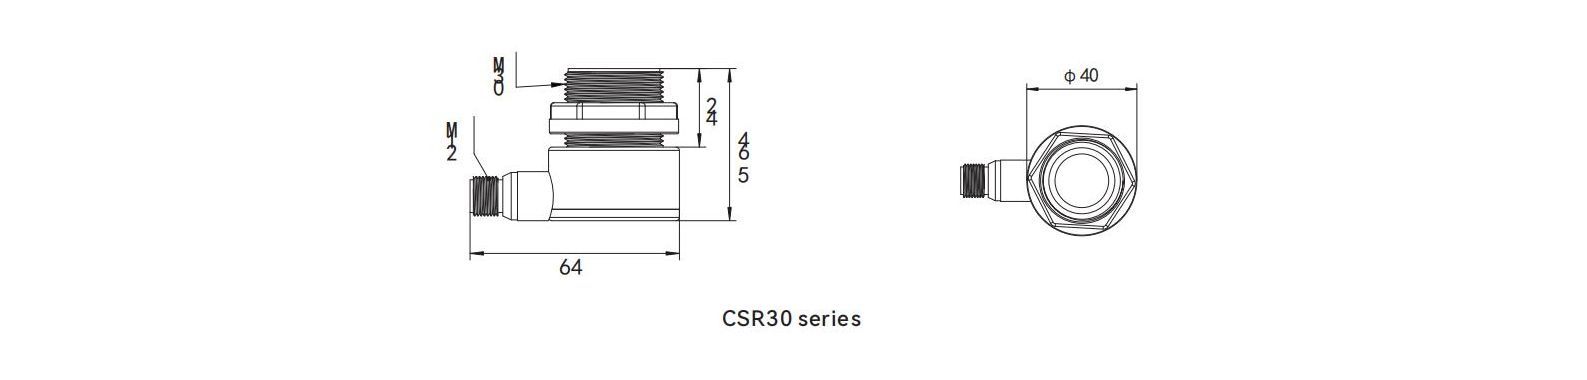 Dimensions of ultrasonic displacement sensor CSR30 series